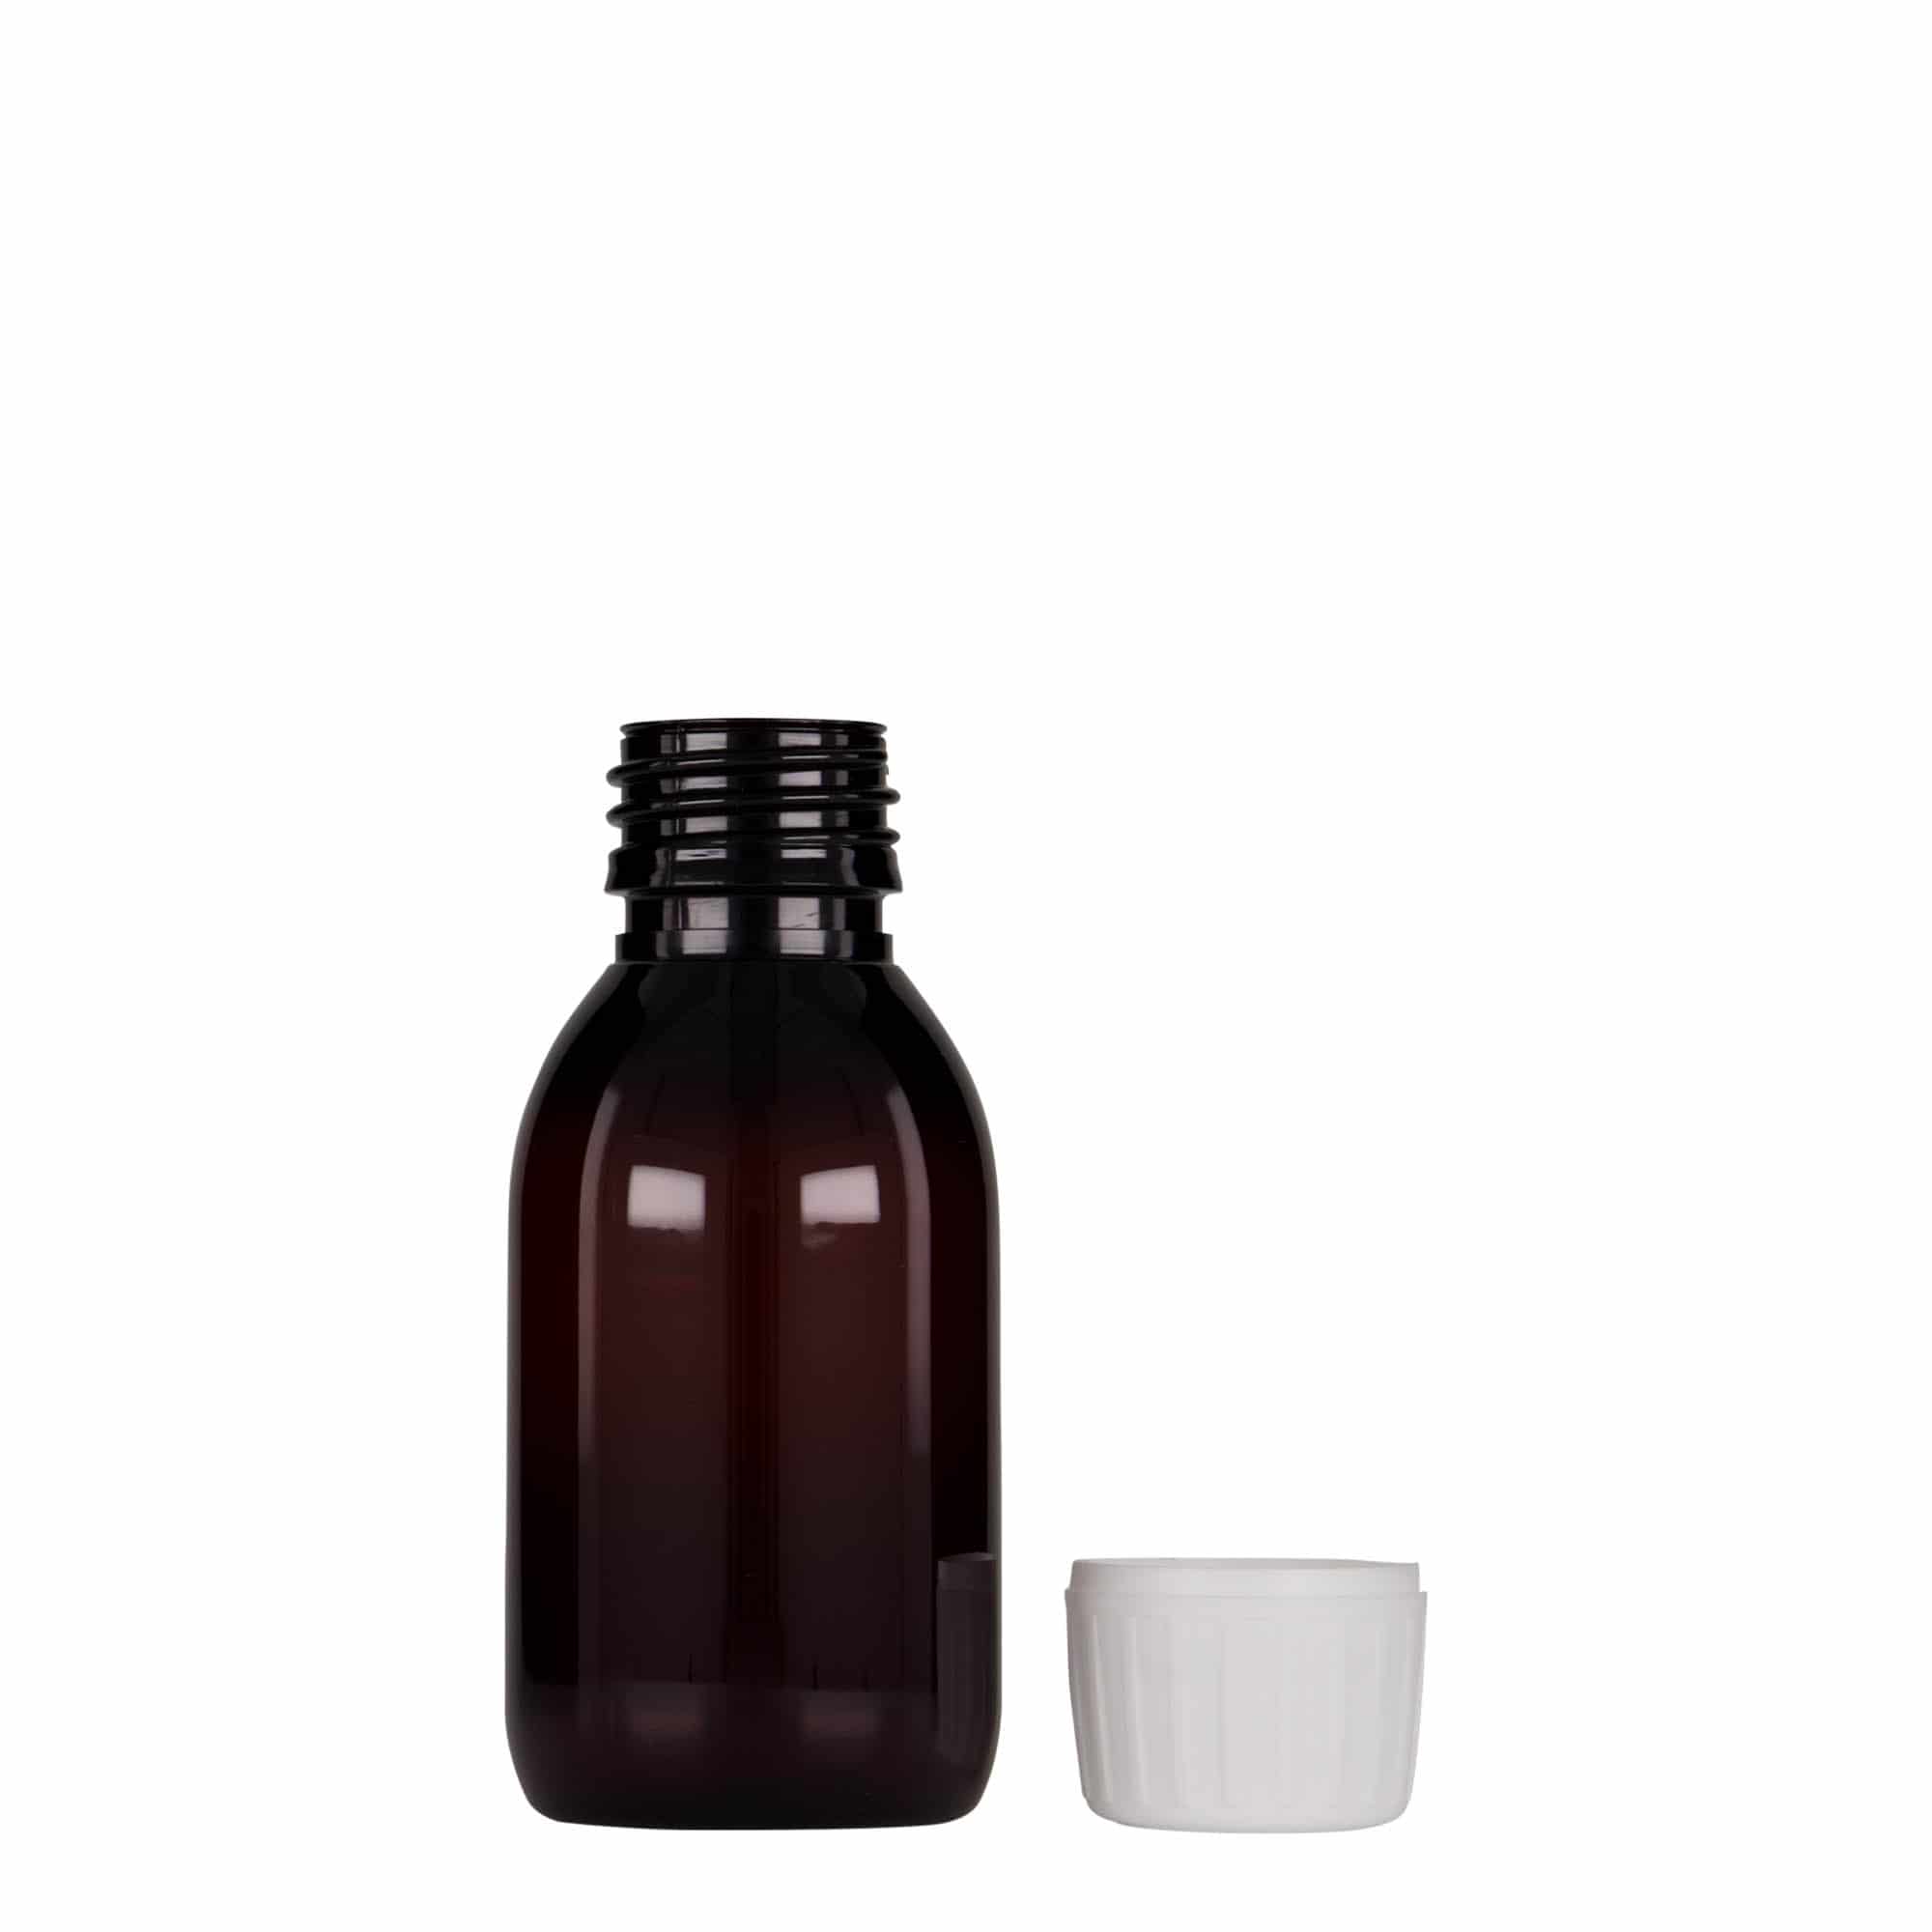 100 ml butelka farmaceutyczna PET, kolor brązowy, tworzywo sztuczne, zamknięcie: PP 28